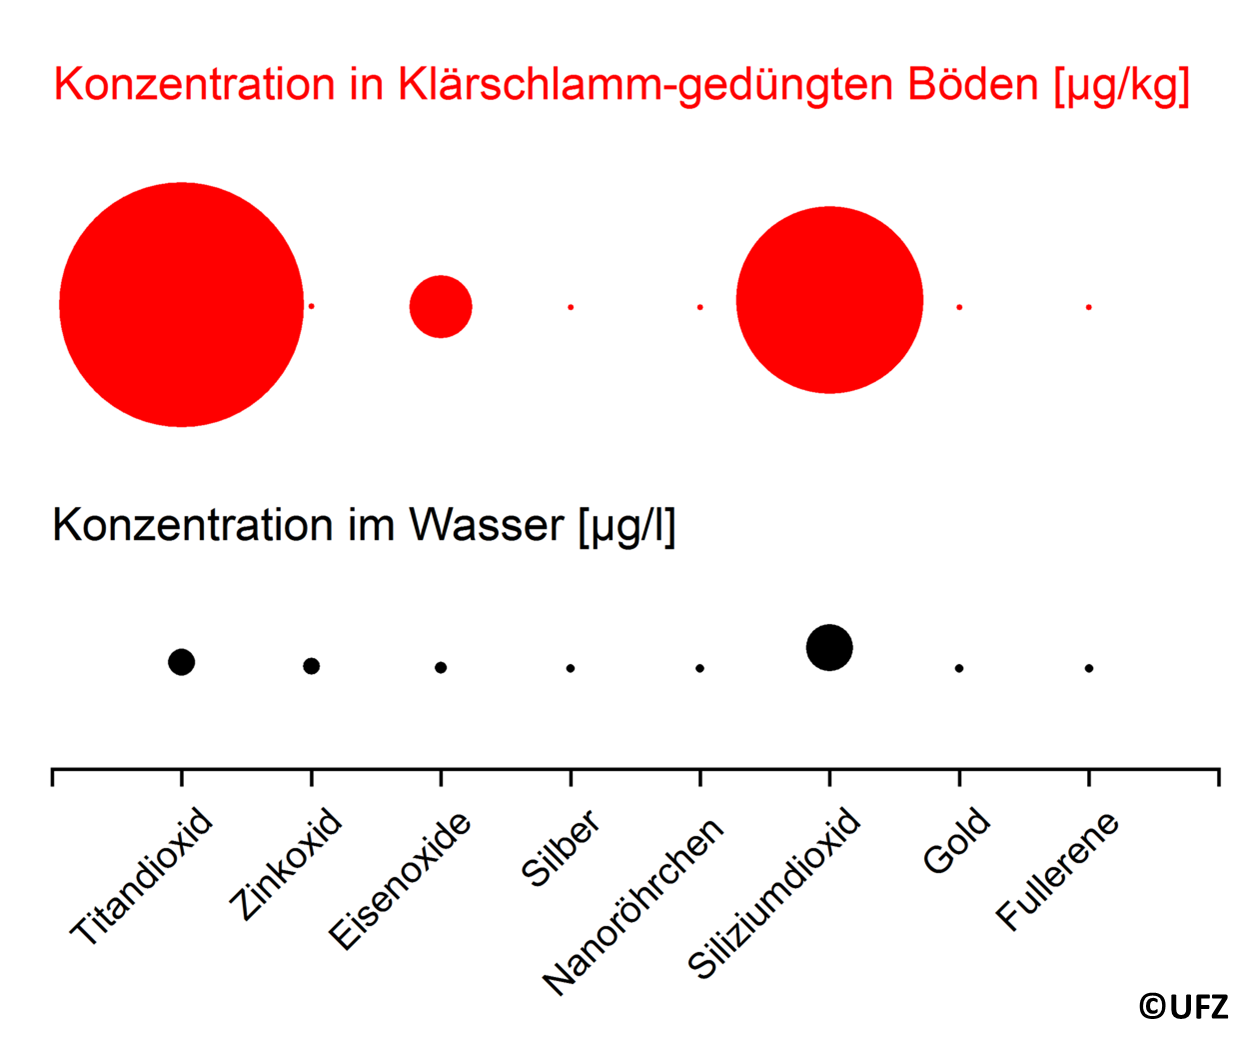 Vorhergesagte Umweltkonzentrationen für Nanomaterialien in Wasser und Klärschlamm-behandelten Böden. Für die Klärschlamm-gedüngten Böden werden meist höhere Konzentrationen vorhergesagt, da die Nanomaterialien in der Kläranlage aus dem Wasser entfernt werden und sich im Klärschlamm absetzen. ©Andreas Mattern/ UFZ Leipzig